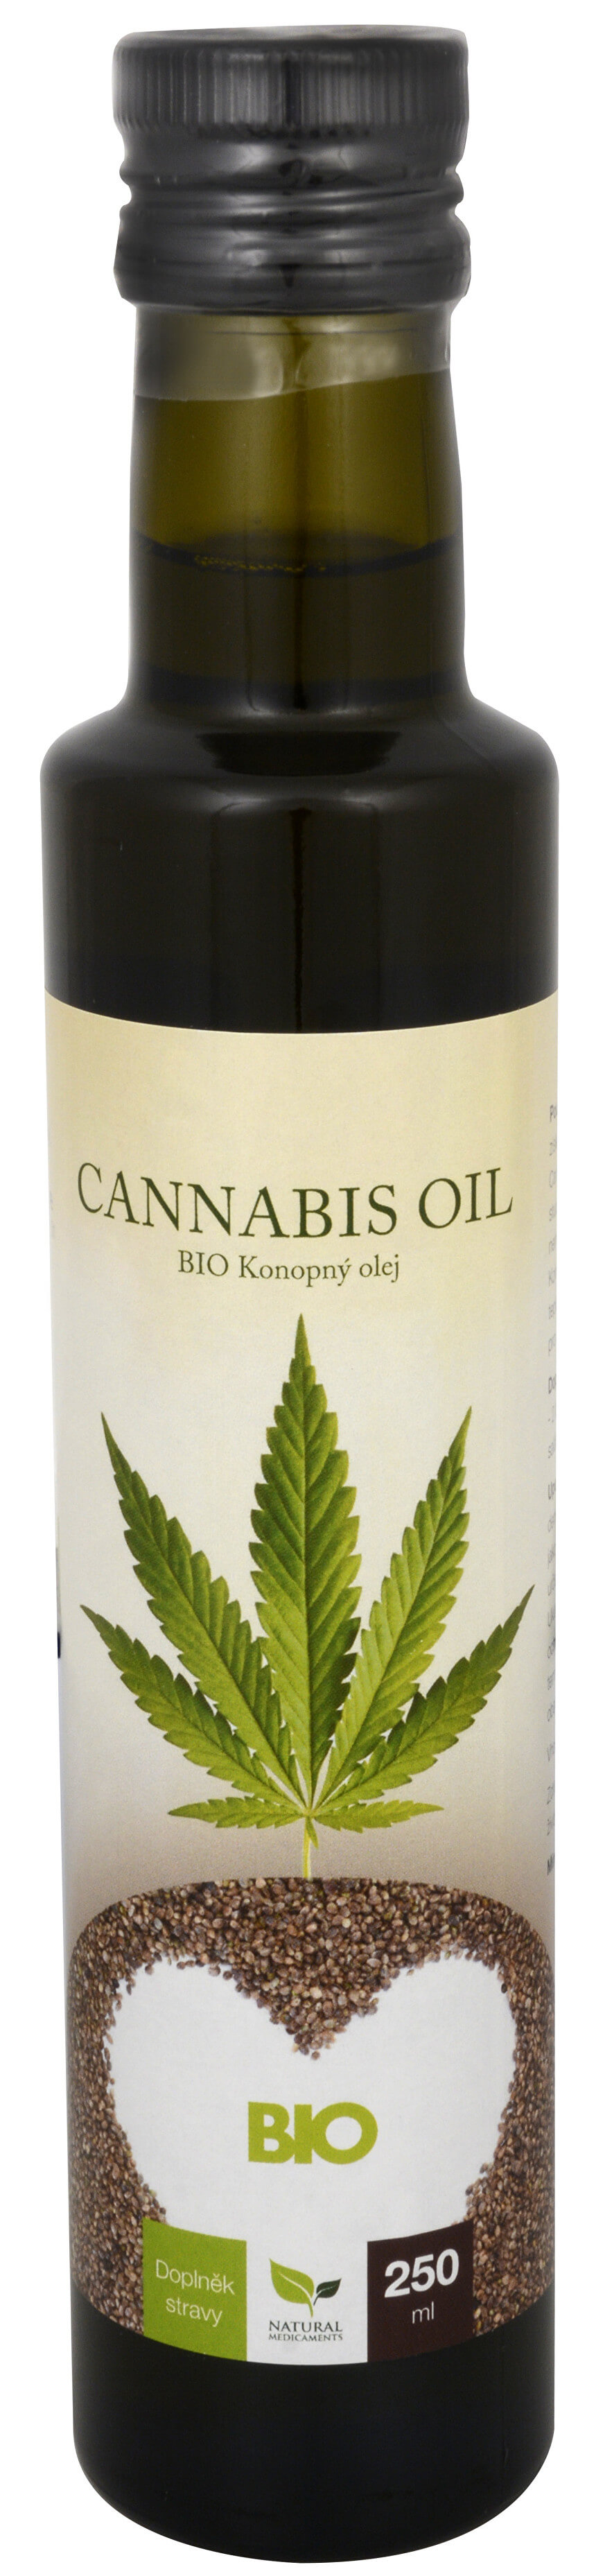 Zobrazit detail výrobku Natural Medicaments Cannabis oil - BIO Konopný olej 250 ml